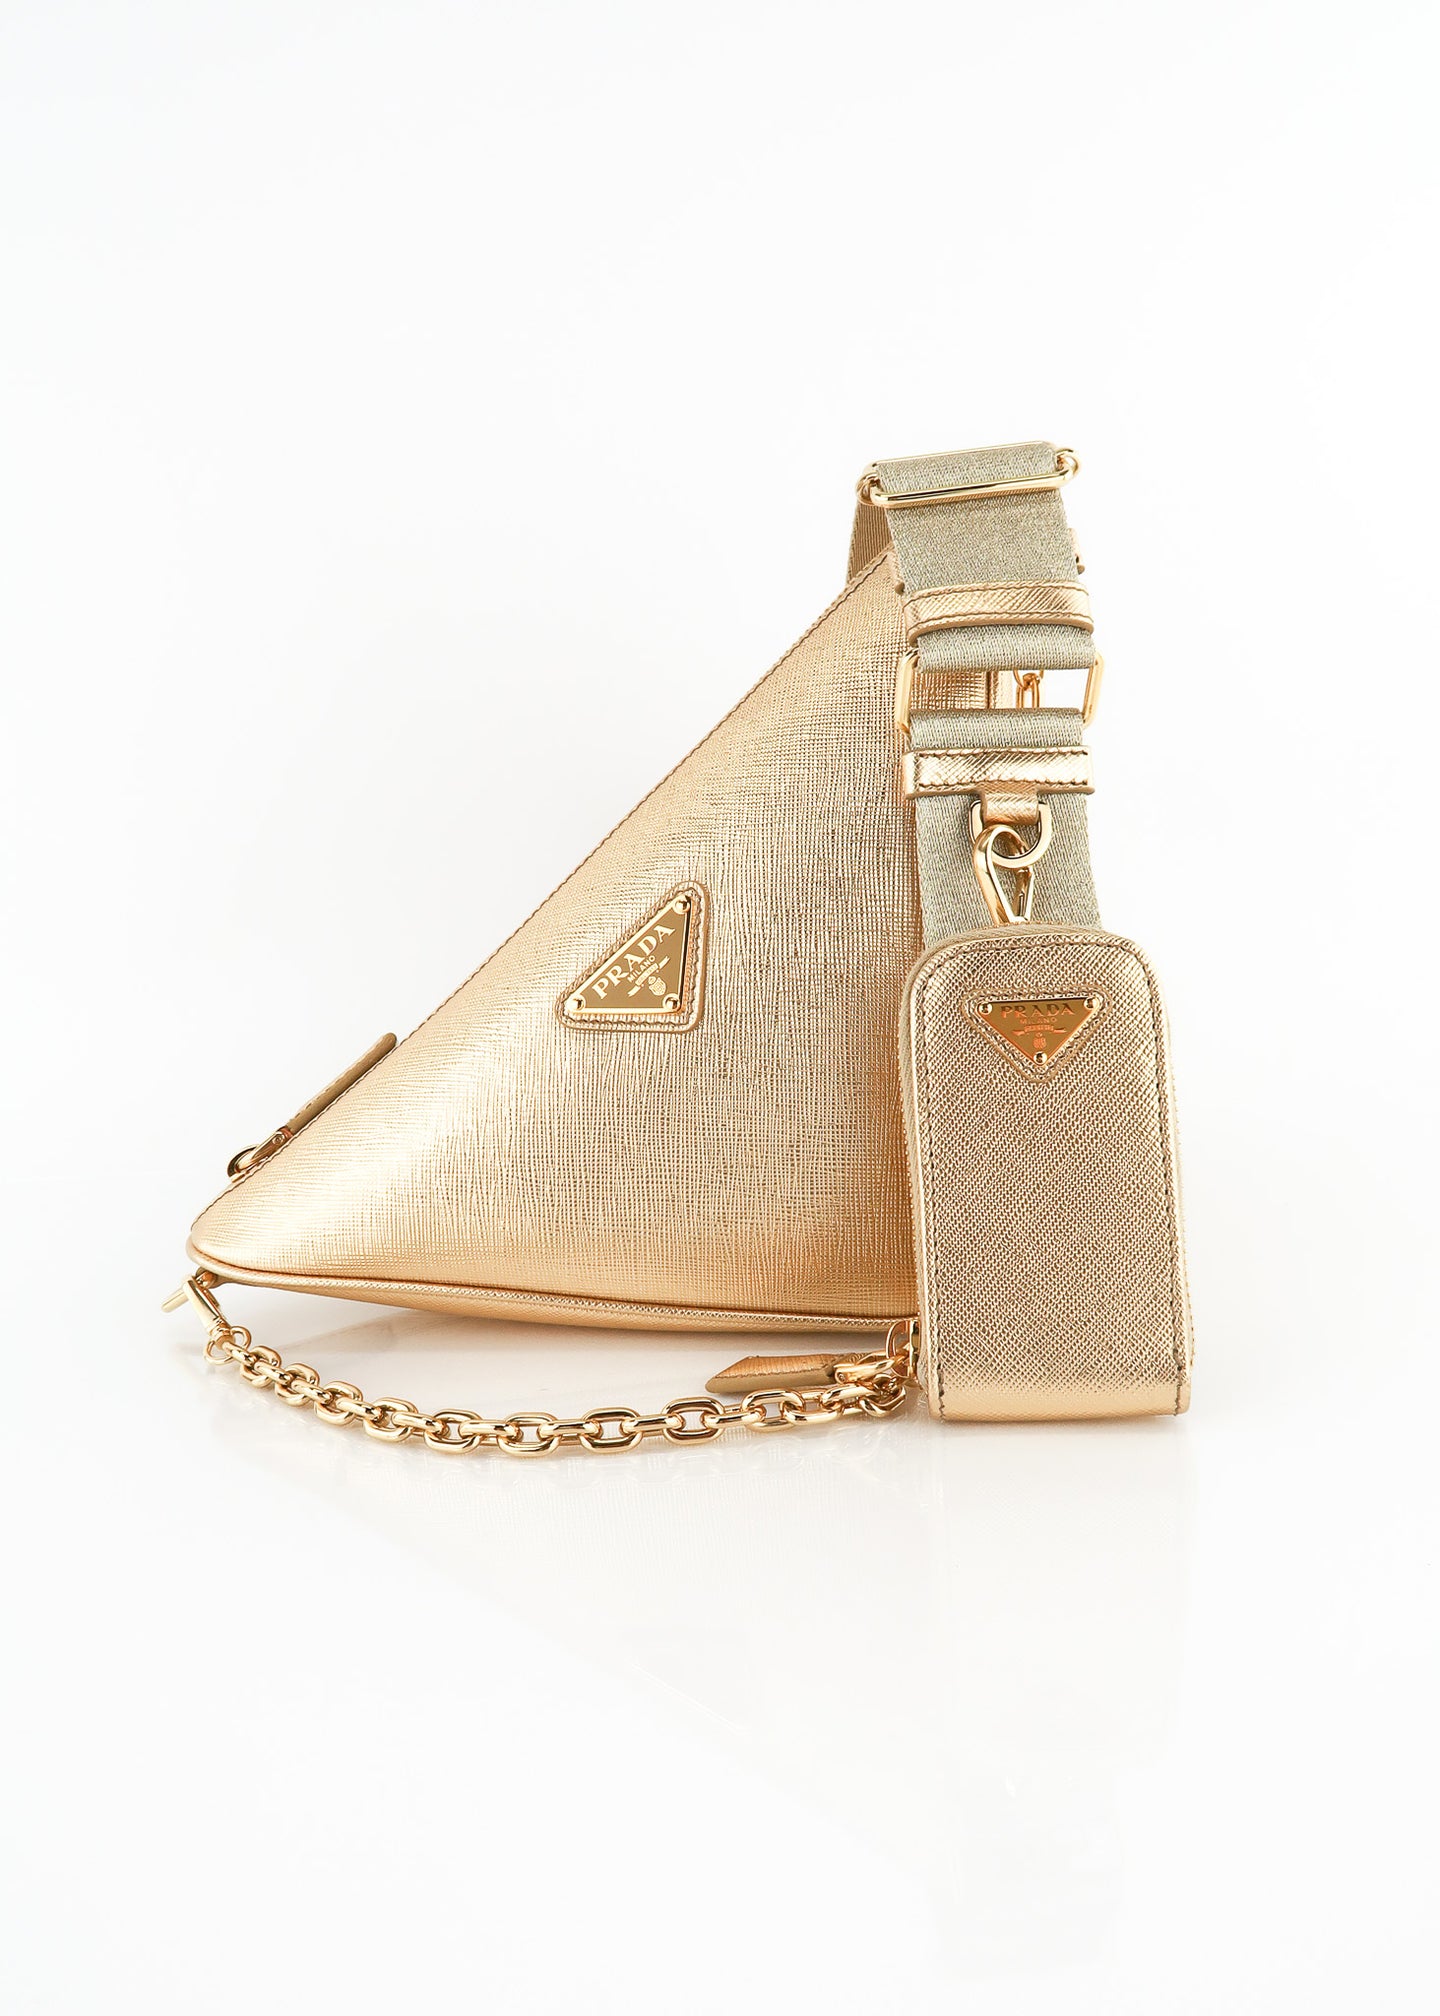 triangle Saffiano-leather shoulder bag, Prada